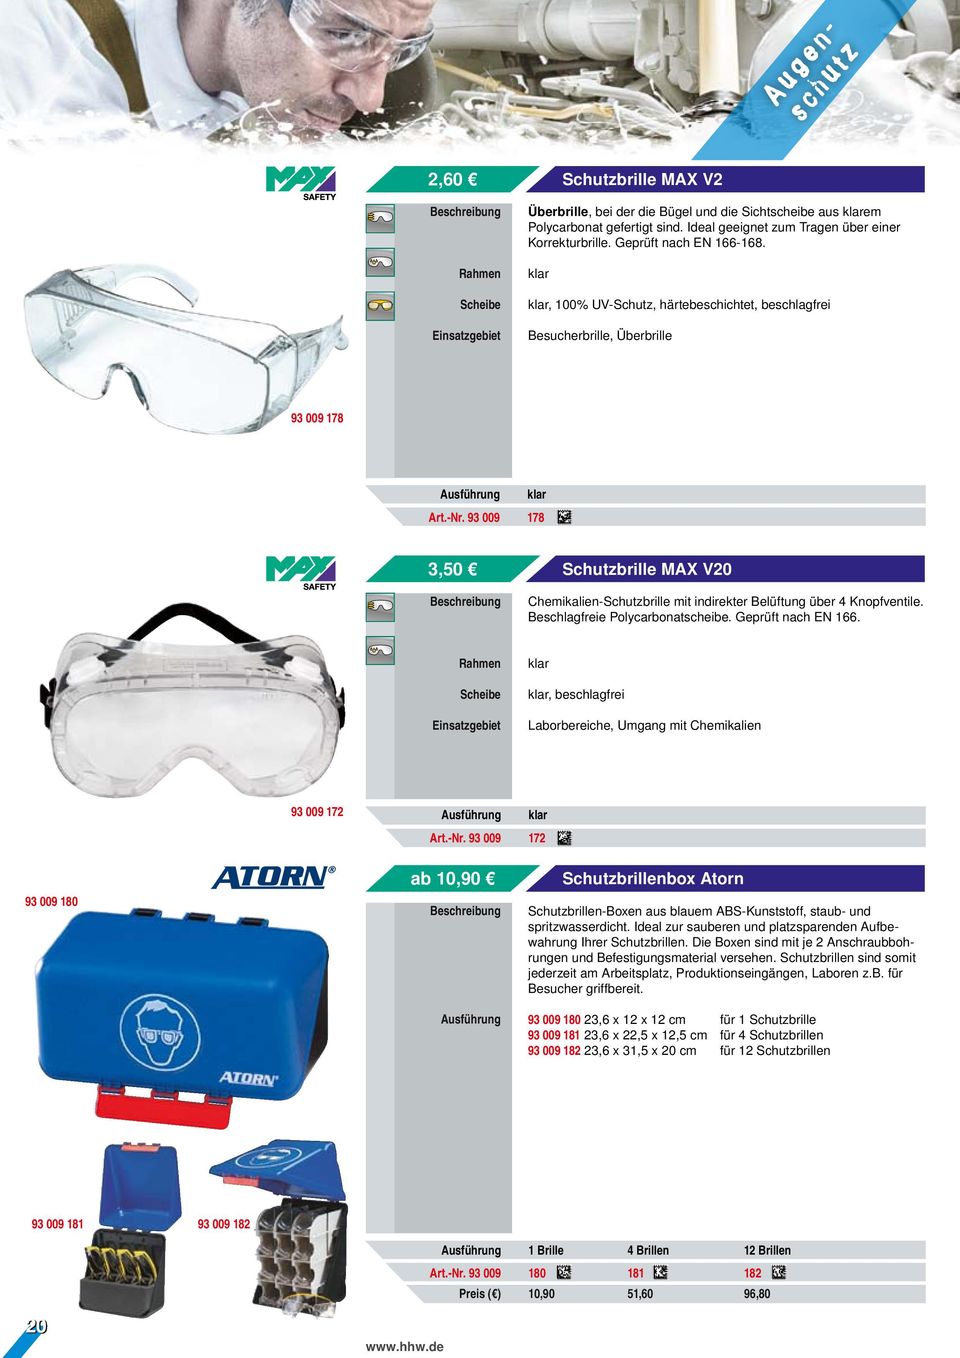 93 009 178 3,50 Schutzbrille MAX V20 Chemikalien-Schutzbrille mit indirekter Belüftung über 4 Knopfventile. Beschlagfreie Polycarbonatscheibe. Geprüft nach EN 166.